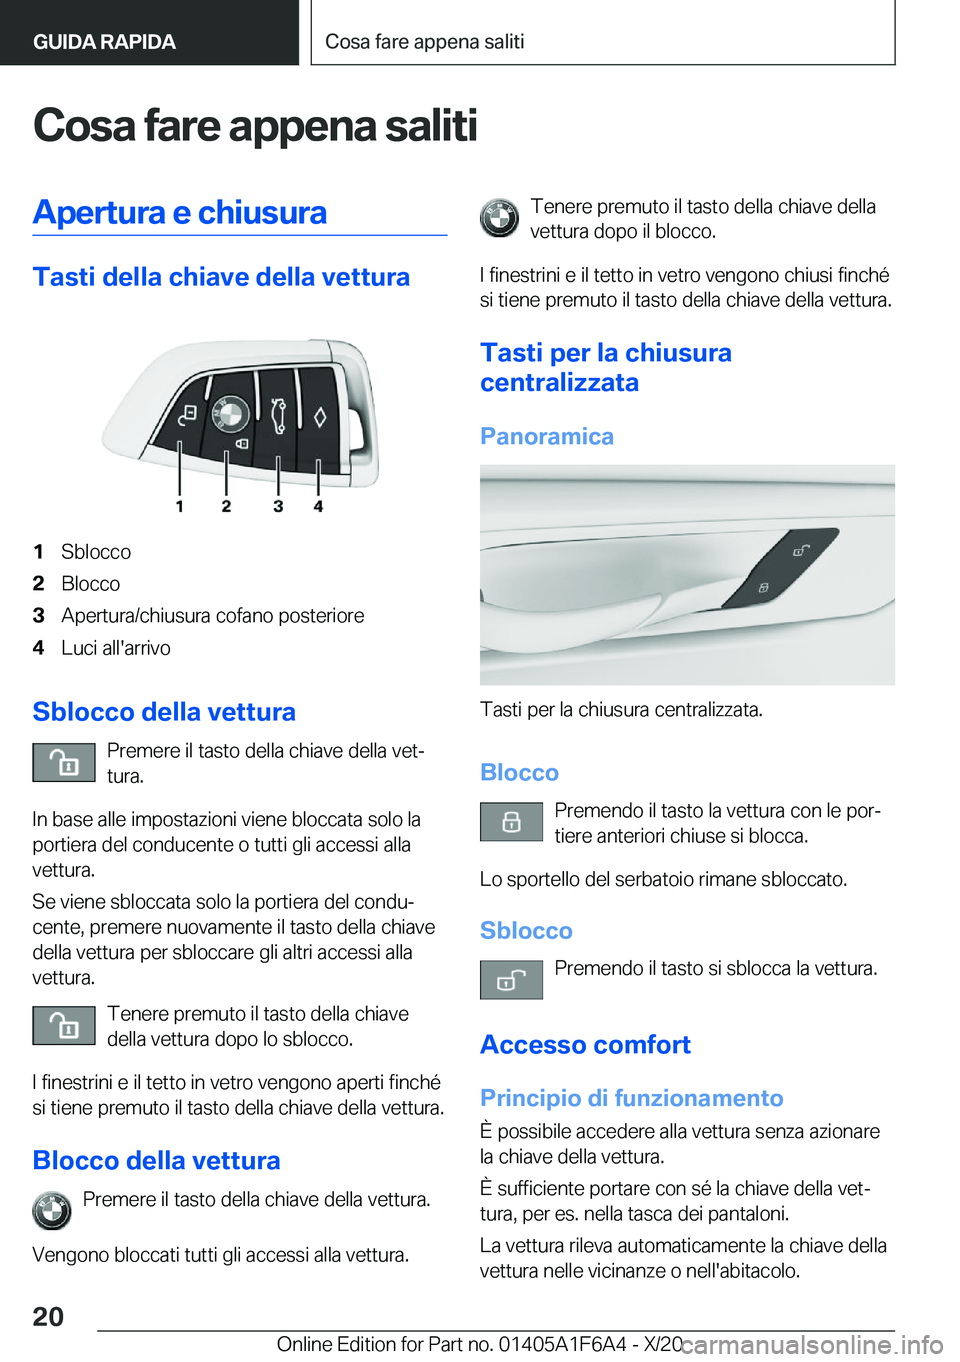 BMW X4 2021  Libretti Di Uso E manutenzione (in Italian) �C�o�s�a��f�a�r�e��a�p�p�e�n�a��s�a�l�i�t�i�A�p�e�r�t�u�r�a��e��c�h�i�u�s�u�r�a
�T�a�s�t�i��d�e�l�l�a��c�h�i�a�v�e��d�e�l�l�a��v�e�t�t�u�r�a
�1�S�b�l�o�c�c�o�2�B�l�o�c�c�o�3�A�p�e�r�t�u�r�a�/